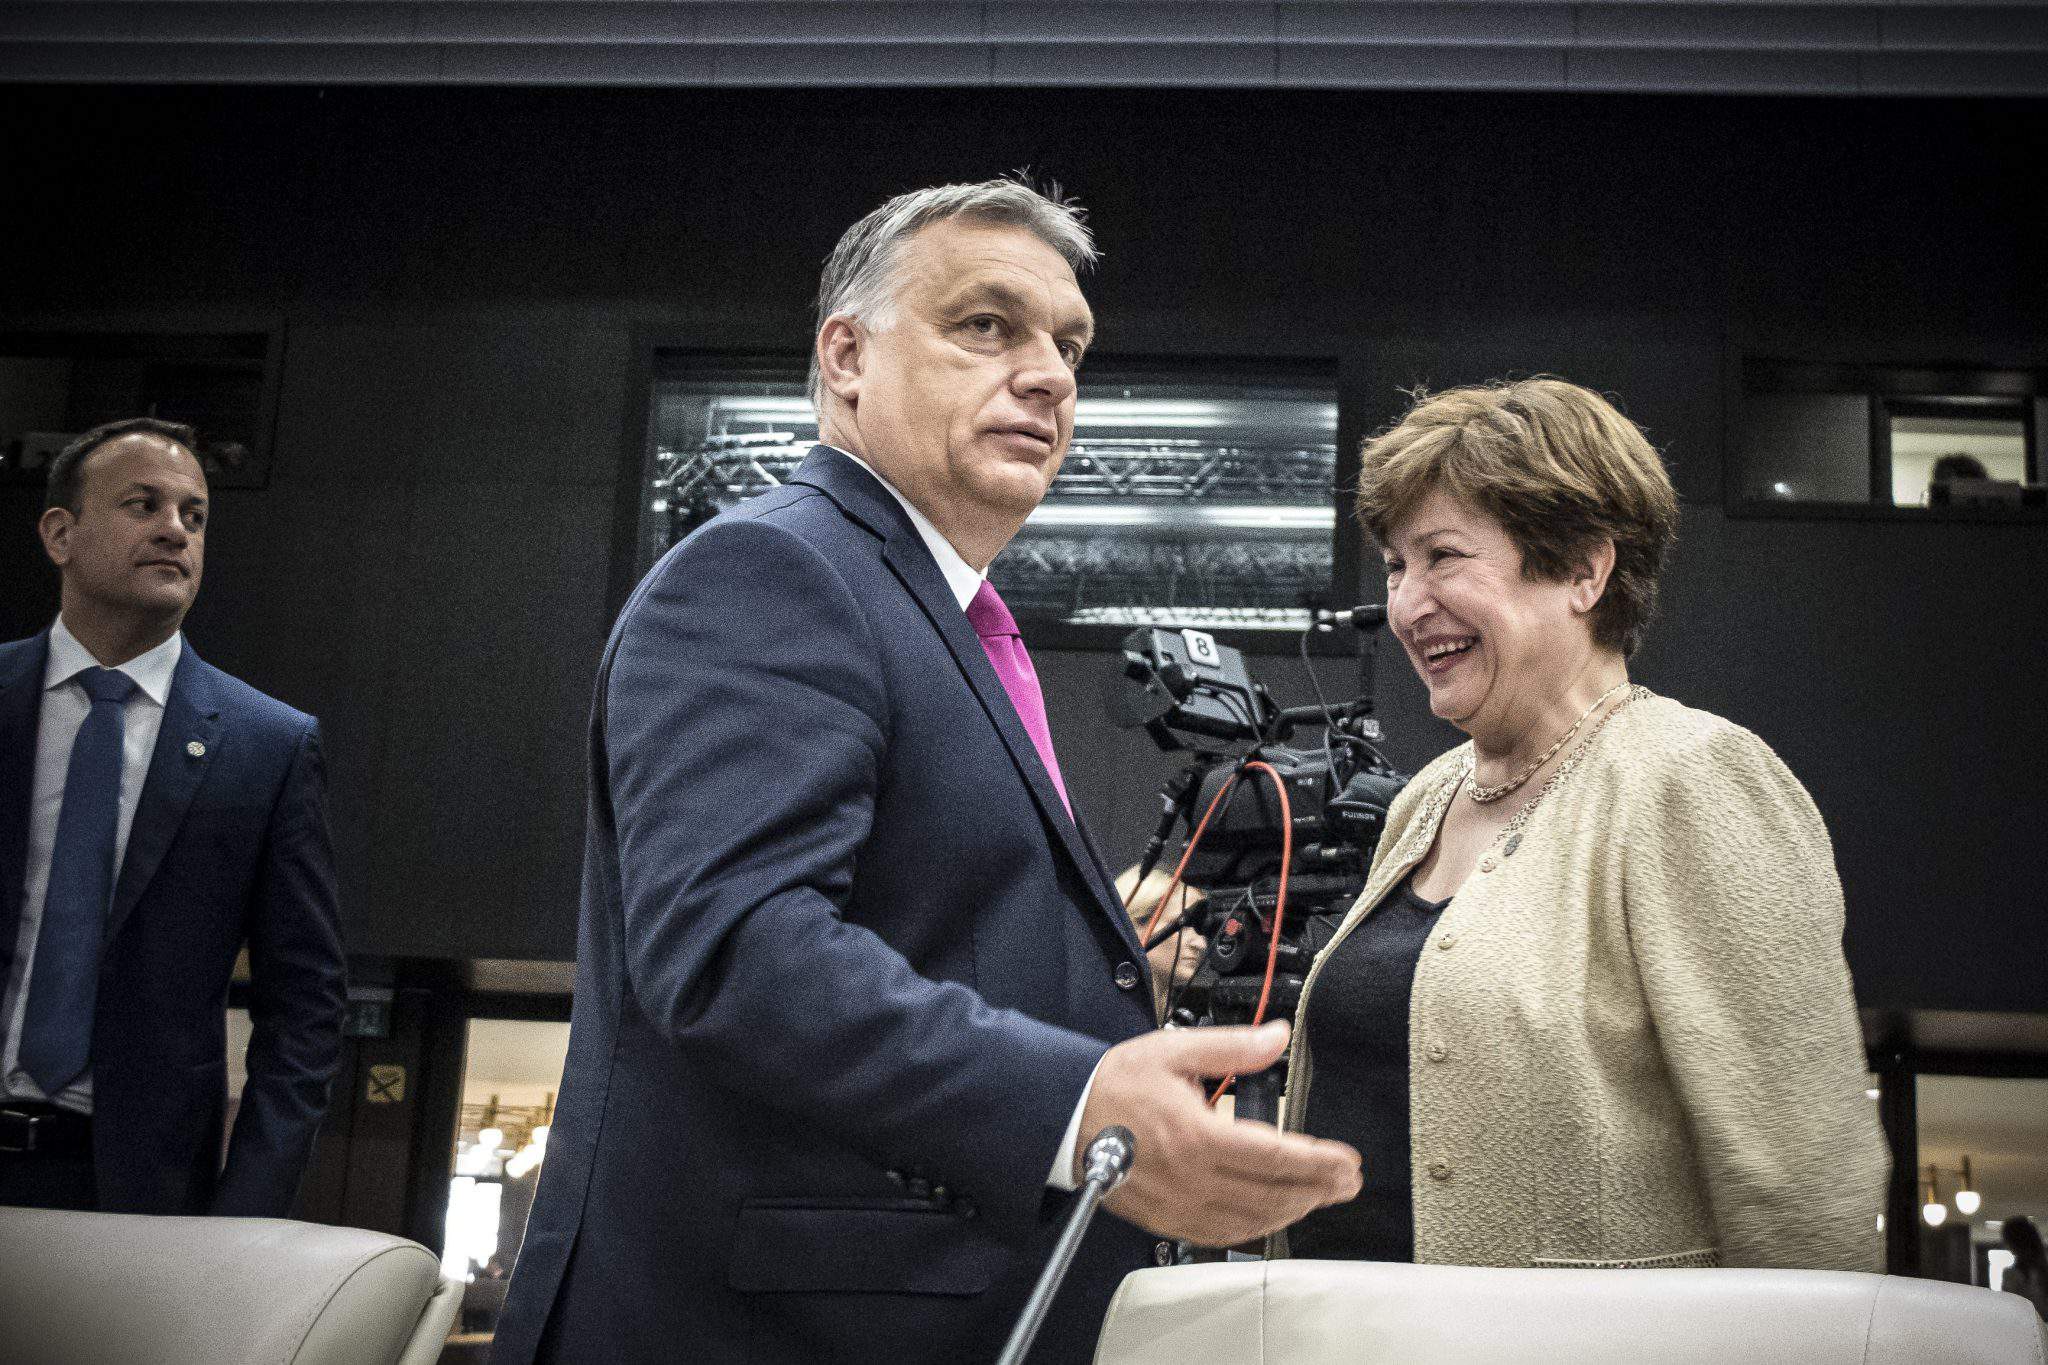 Orbán EU Hungary